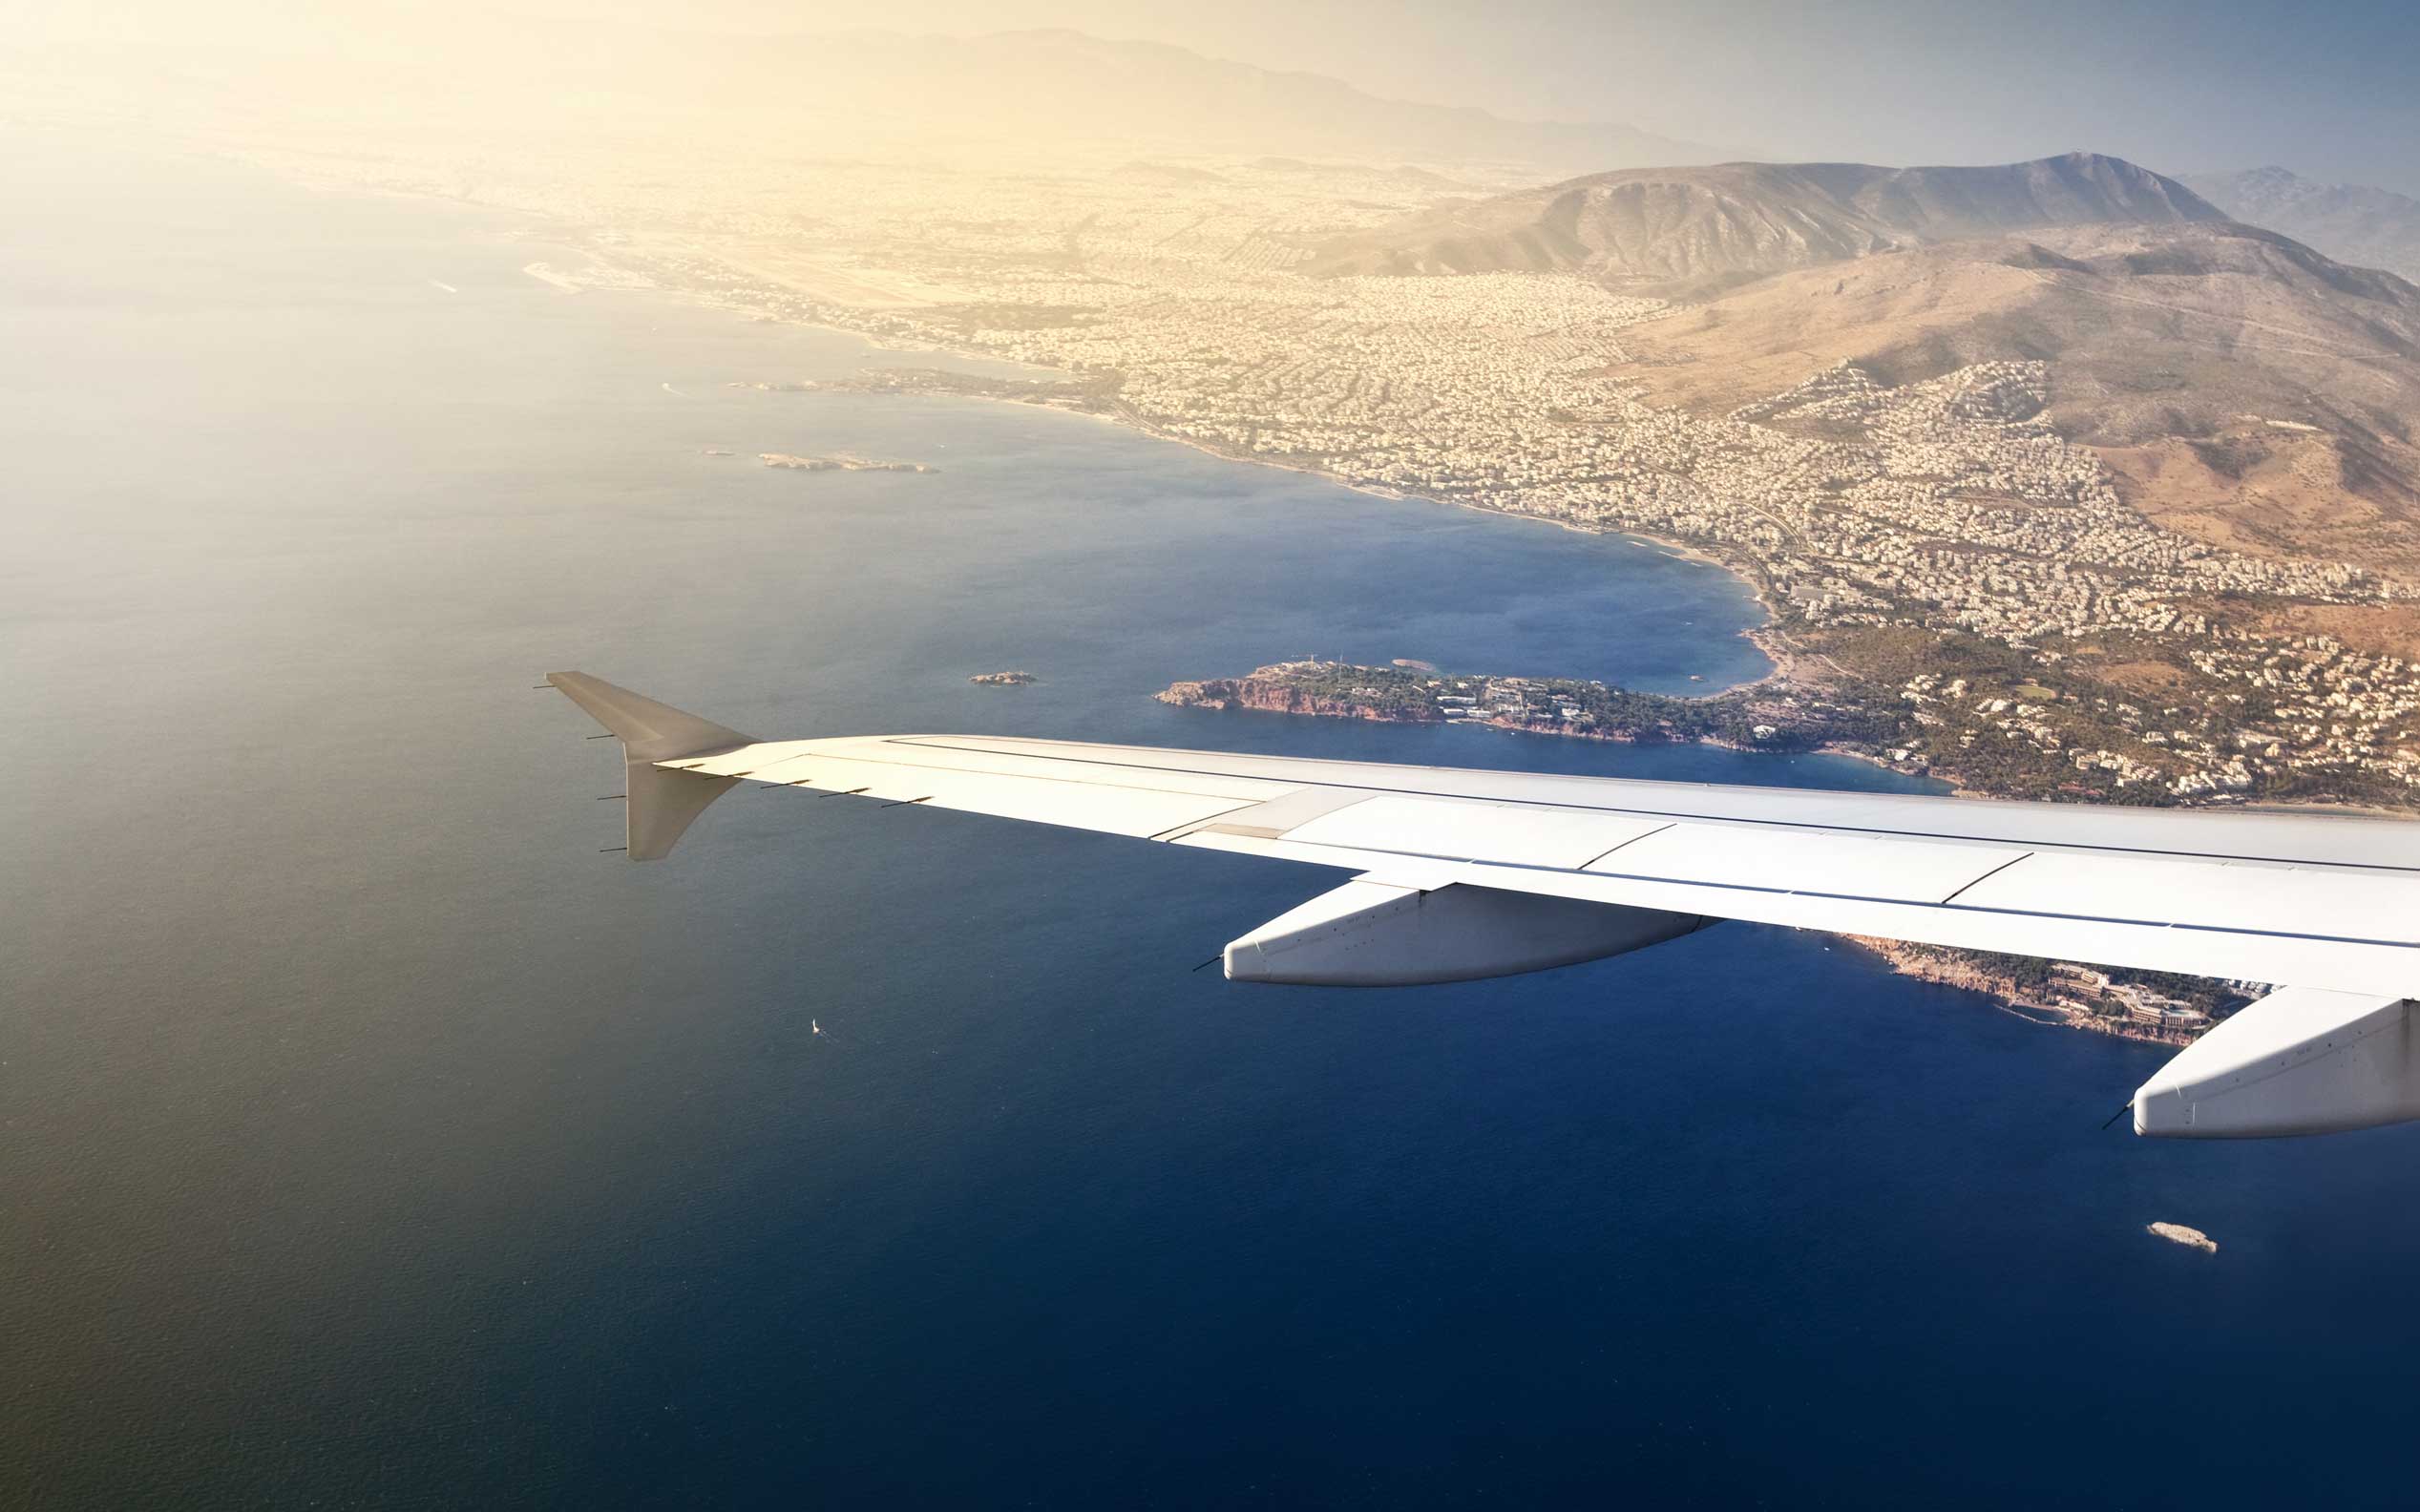 Aegean Airlines Sees Blue Skies Ahead - Greece Is